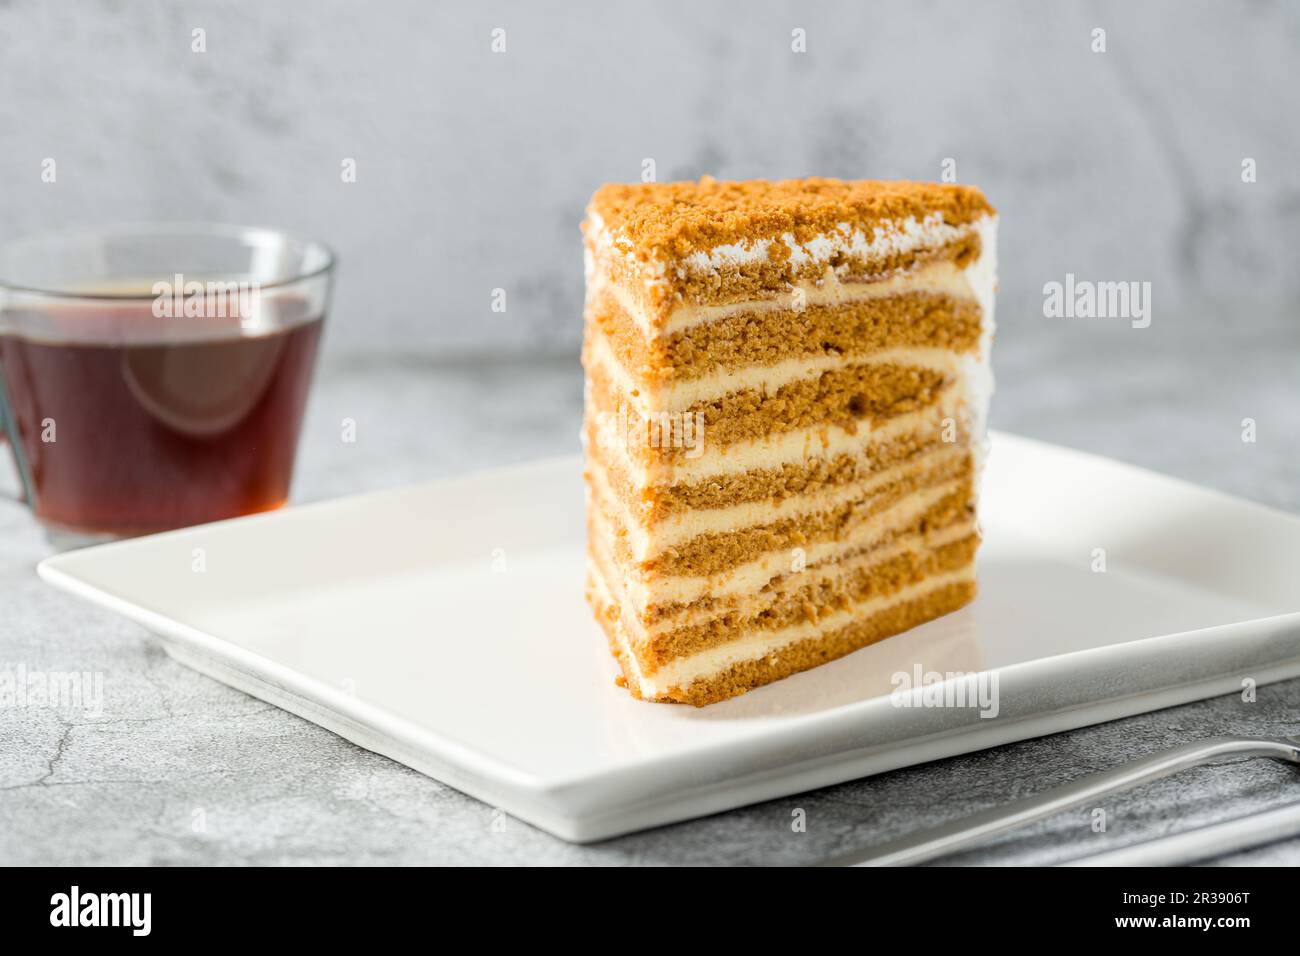 Tranche de gâteau au miel sur plaque en porcelaine blanche sur fond de pierre Medovik Banque D'Images